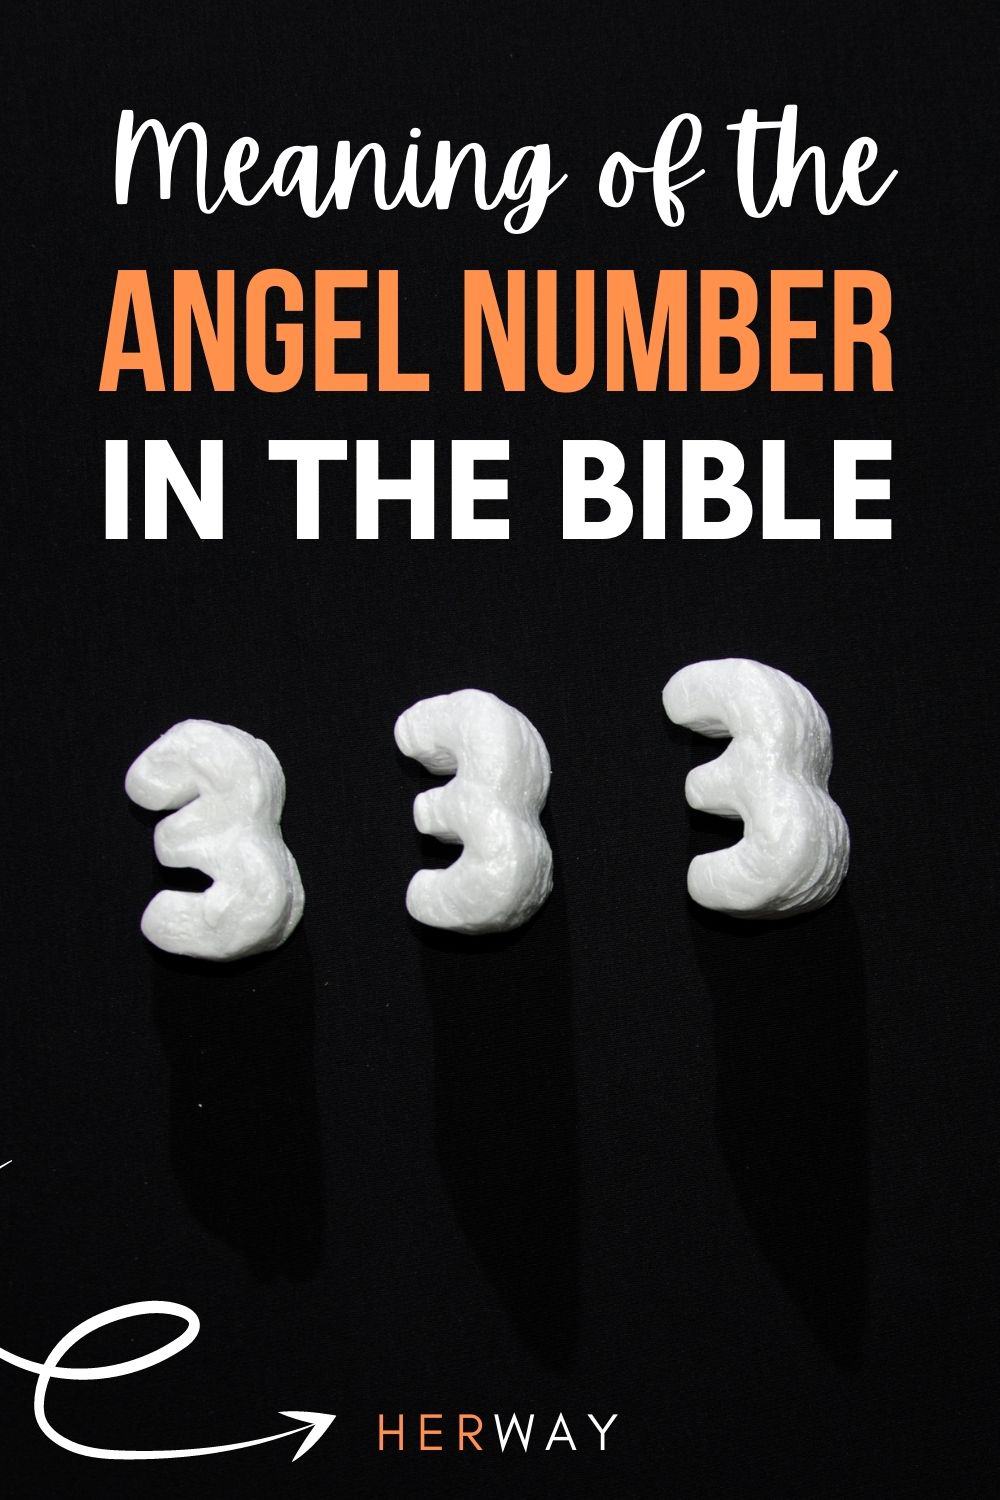 Angelo numero 333 Significato da Dio e nella Bibbia Pinterest